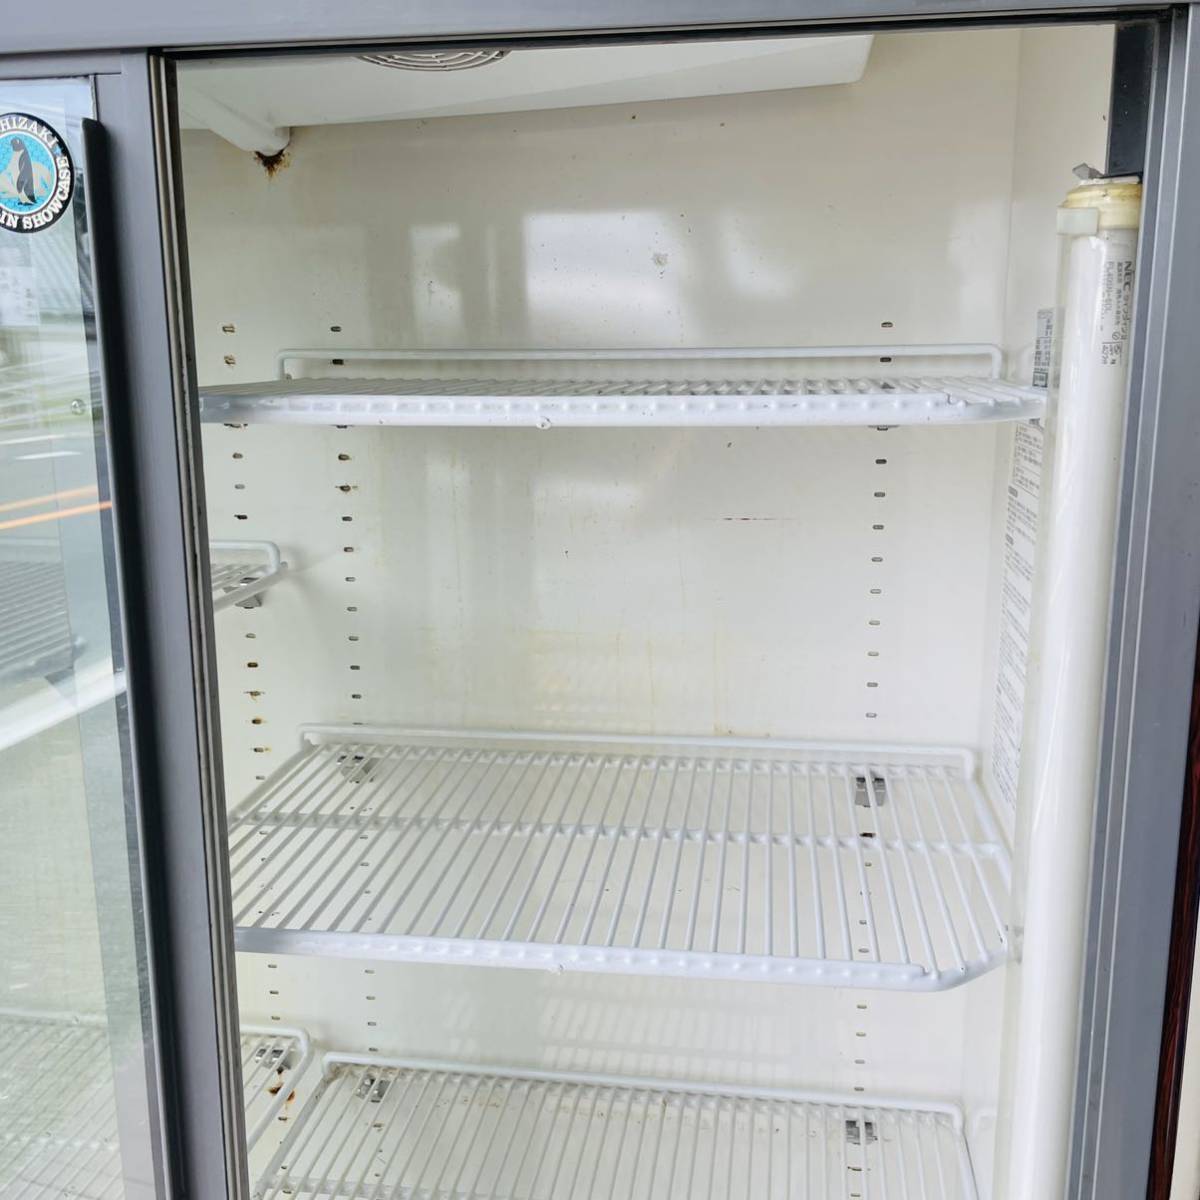 売れ筋】【売れ筋】USF-180A3 (白) ホシザキ リーチイン冷凍ショーケース 送料無料 冷蔵庫・冷凍庫 